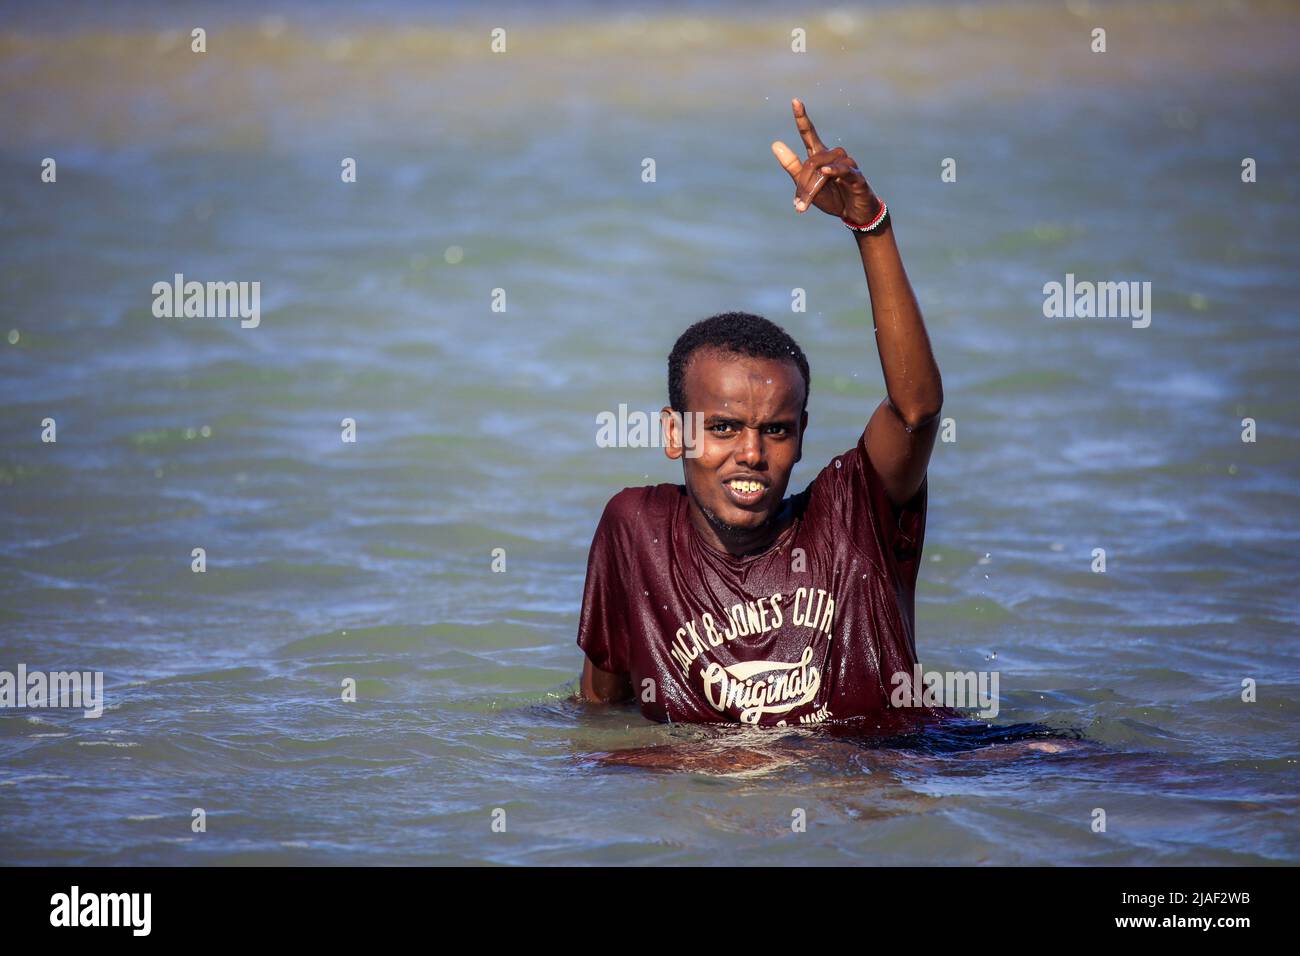 Les gens de la région nageant dans l'eau chaude le jour du soleil sur la côte de Berbera Banque D'Images